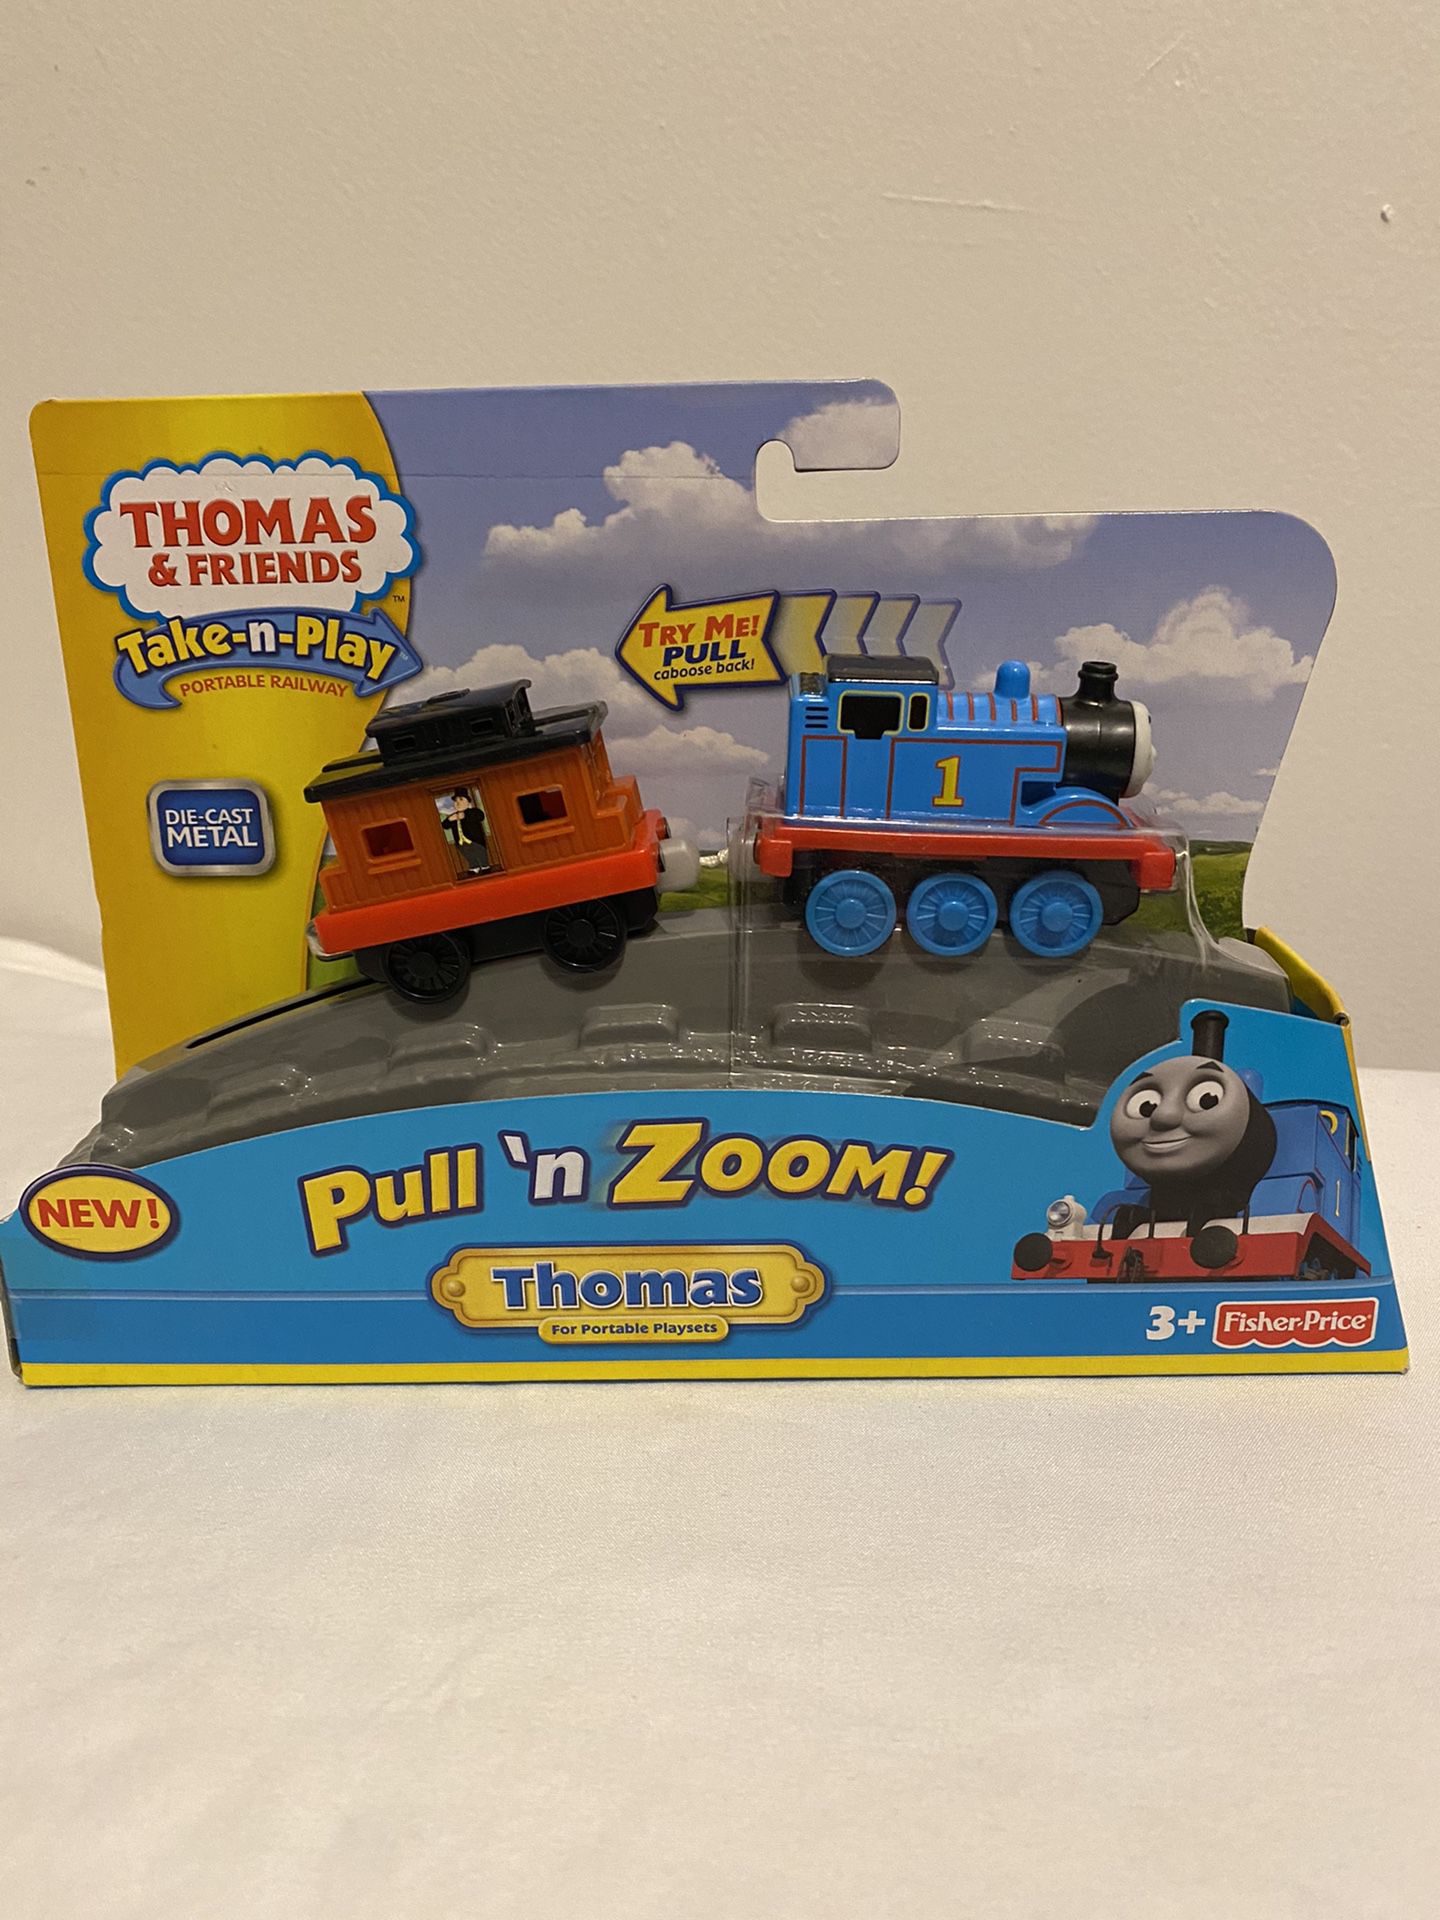 Thomas & Friends Take-n-Play, Pull 'n Zoom - Thomas